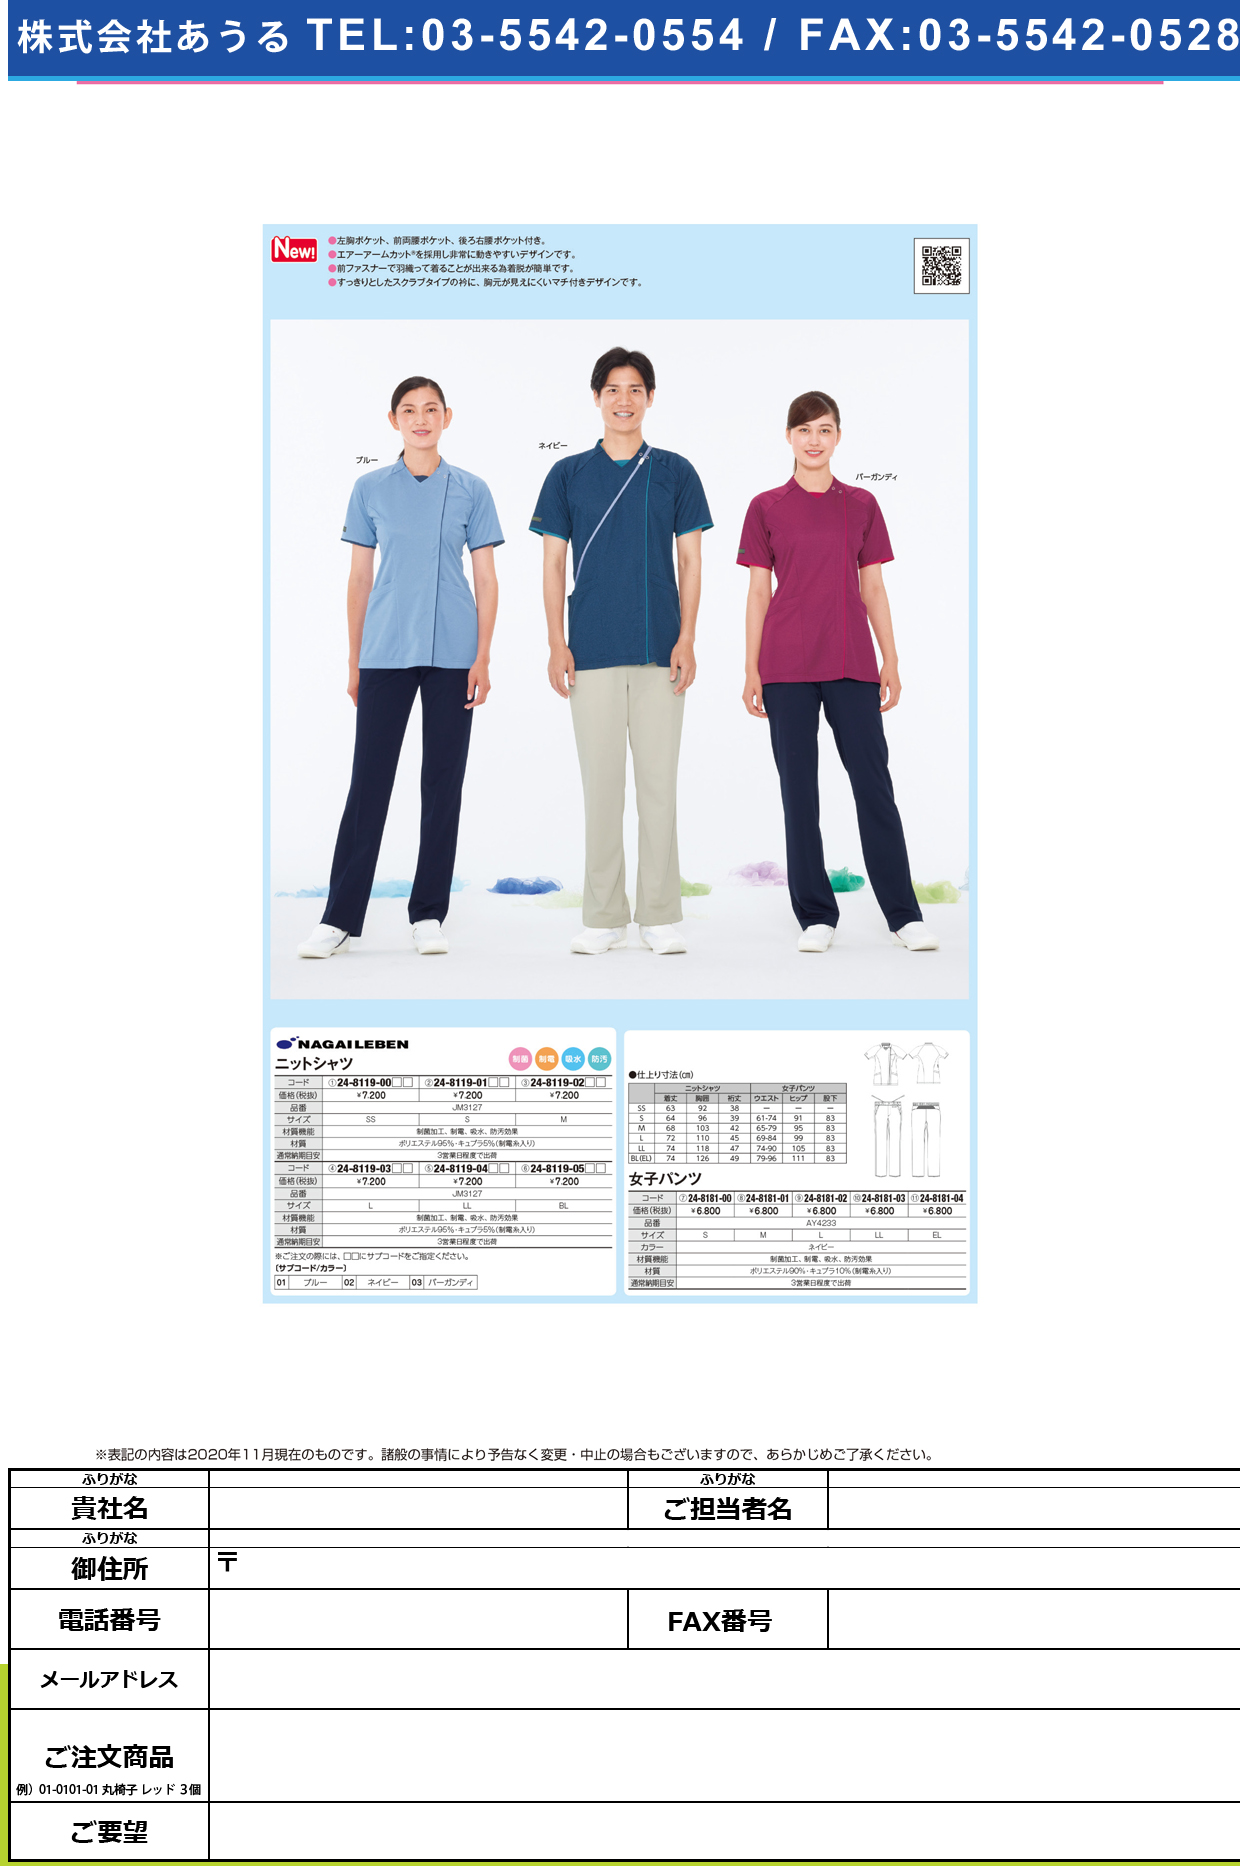 ニットシャツ JM-3127(M)JM-3127(M)ブルー(24-8119-02-01)【ナガイレーベン】(販売単位:1)